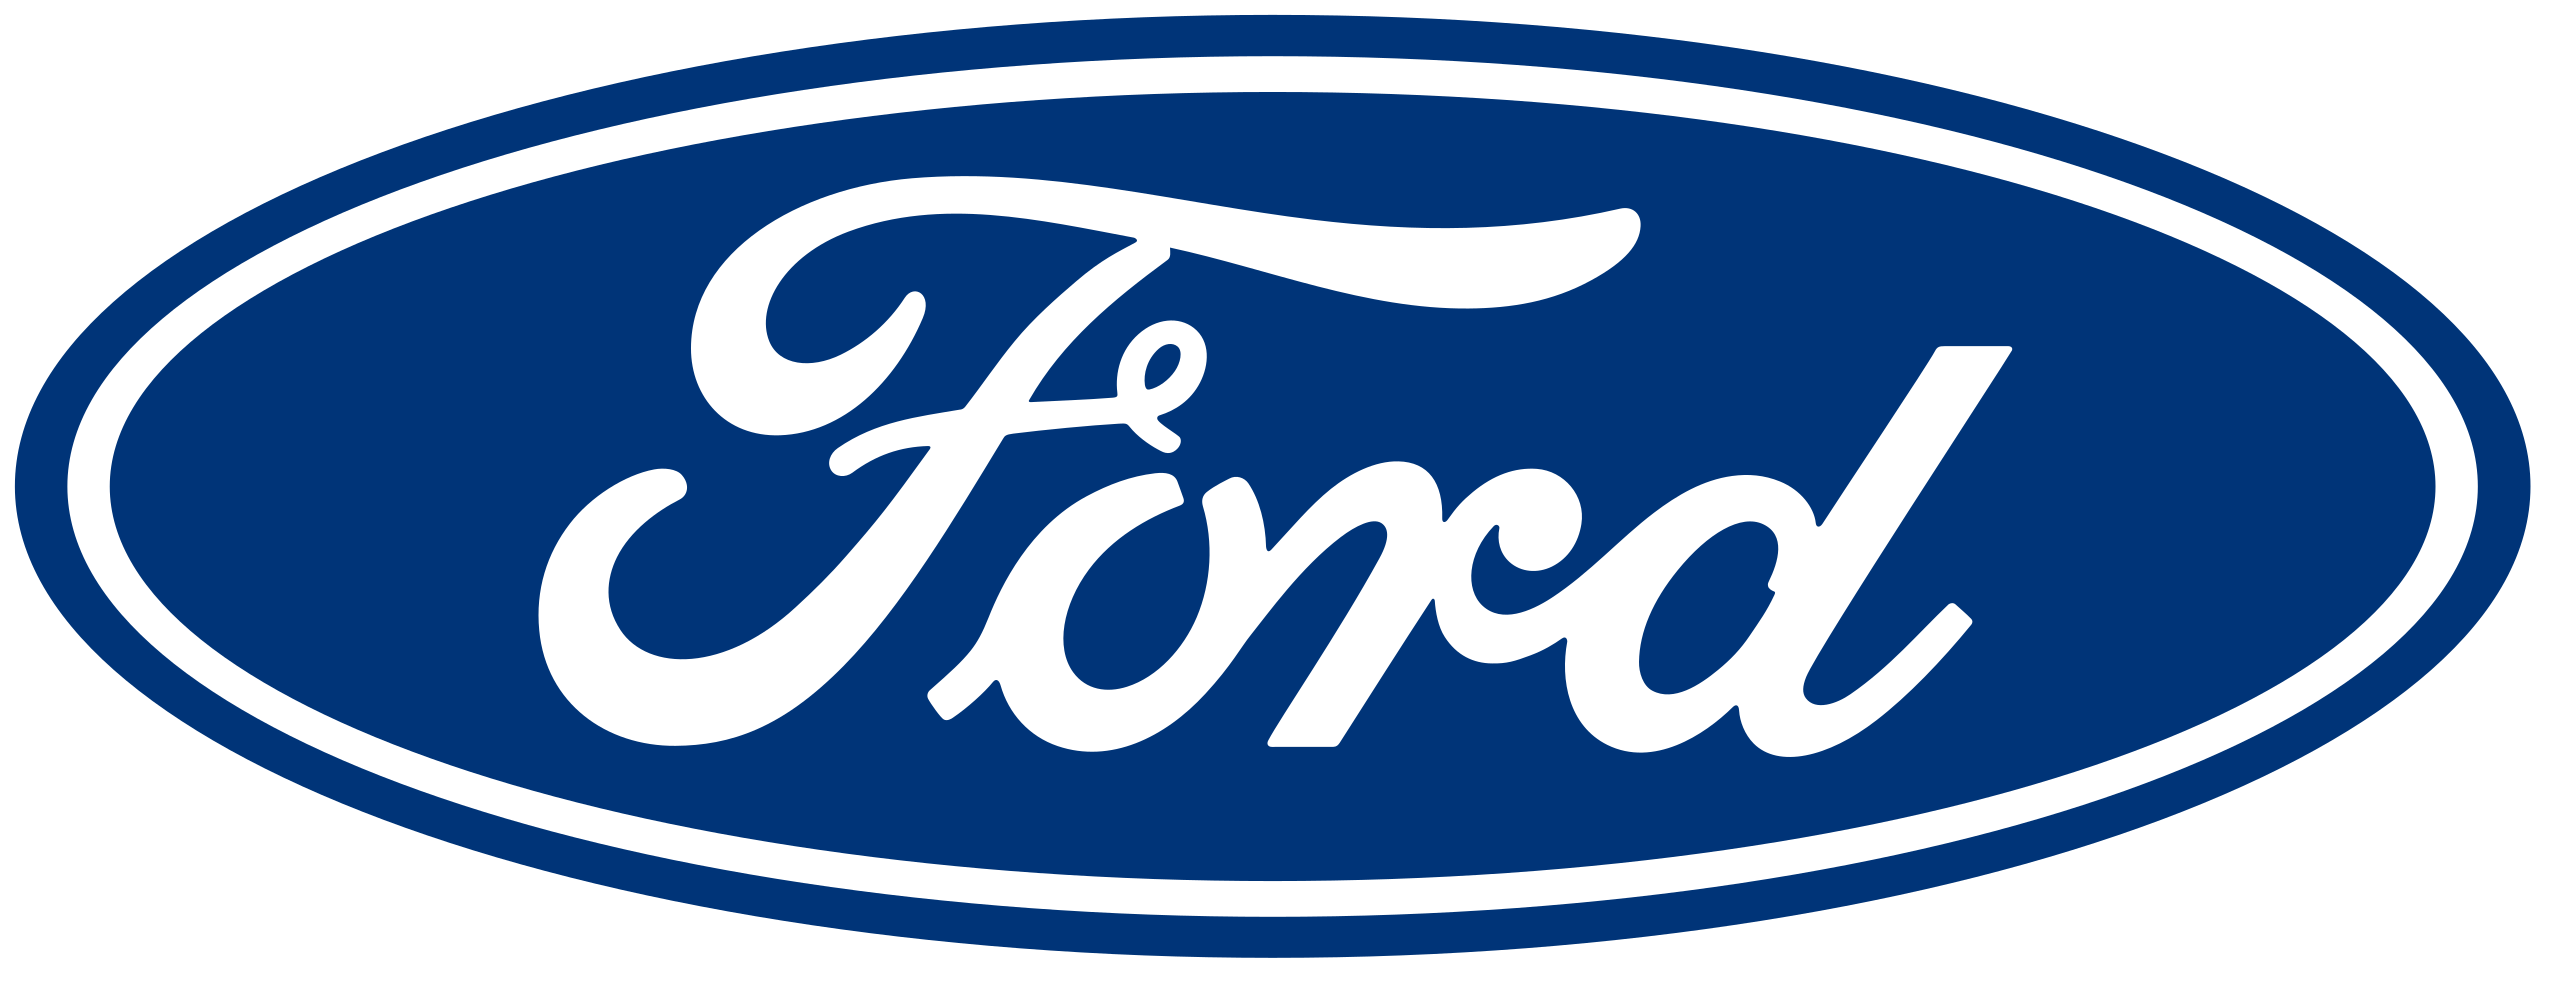 Contacto Ford España